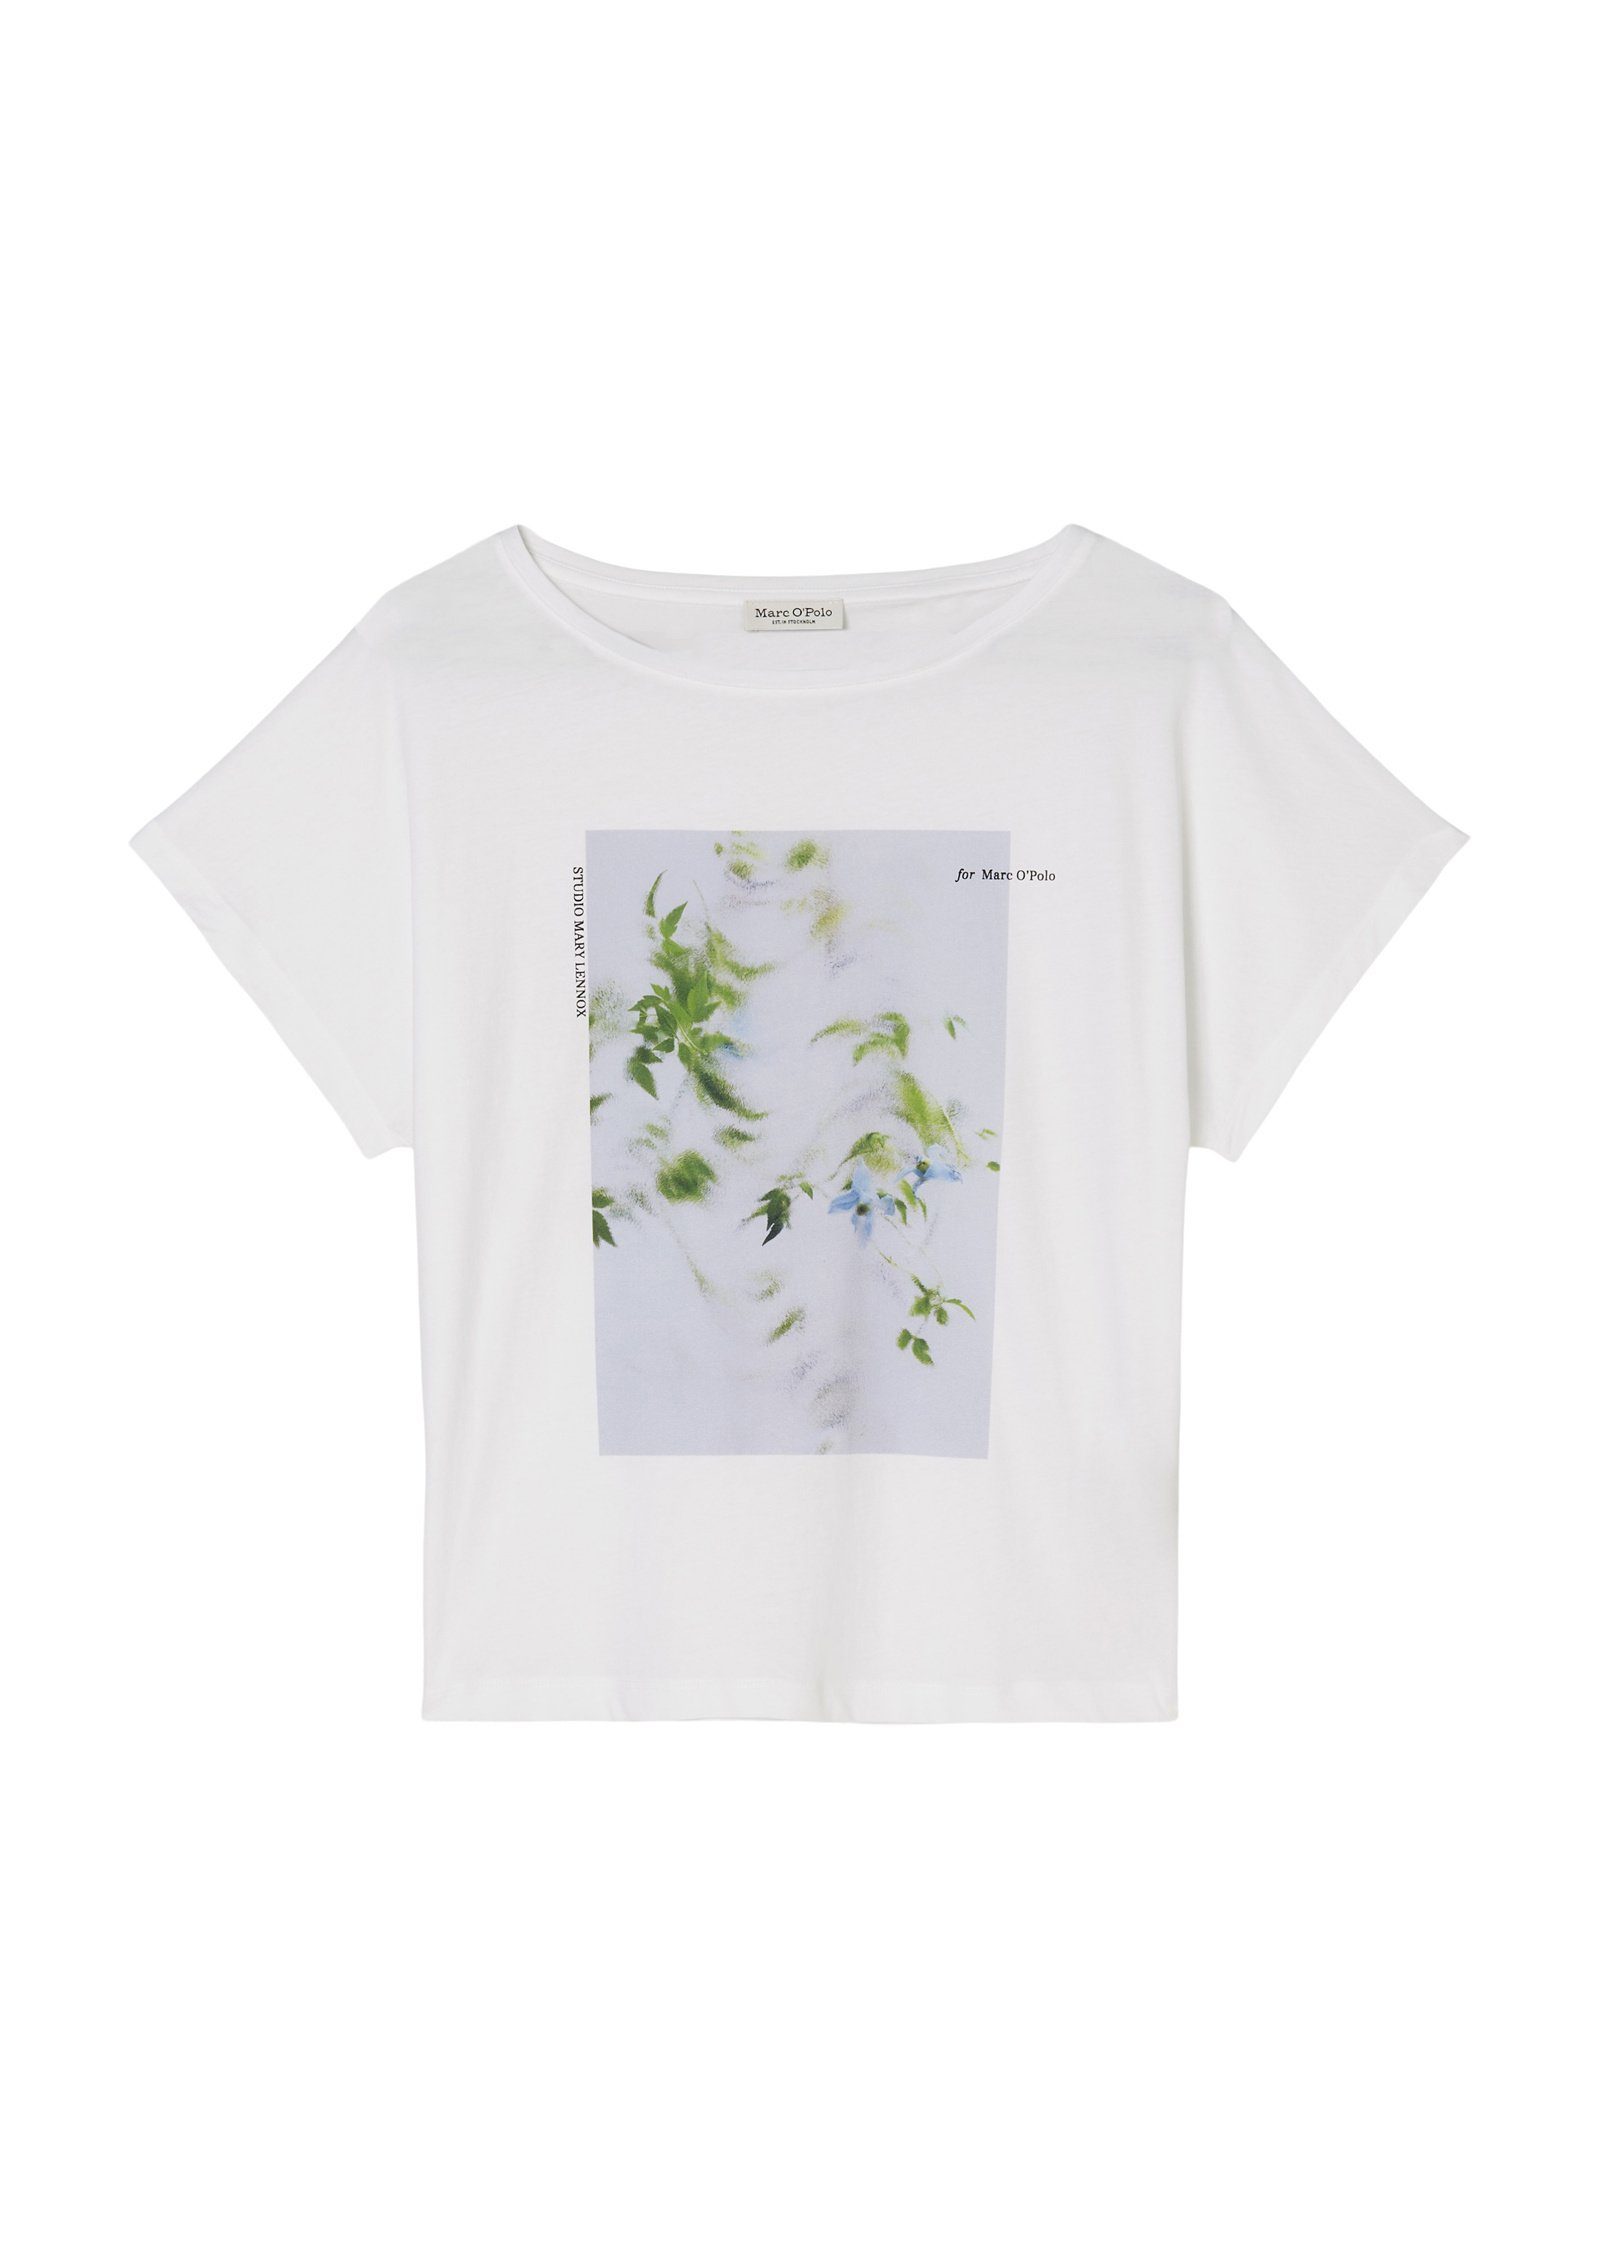 Marc O'Polo T-Shirt mit weiß floralem Foto-Print